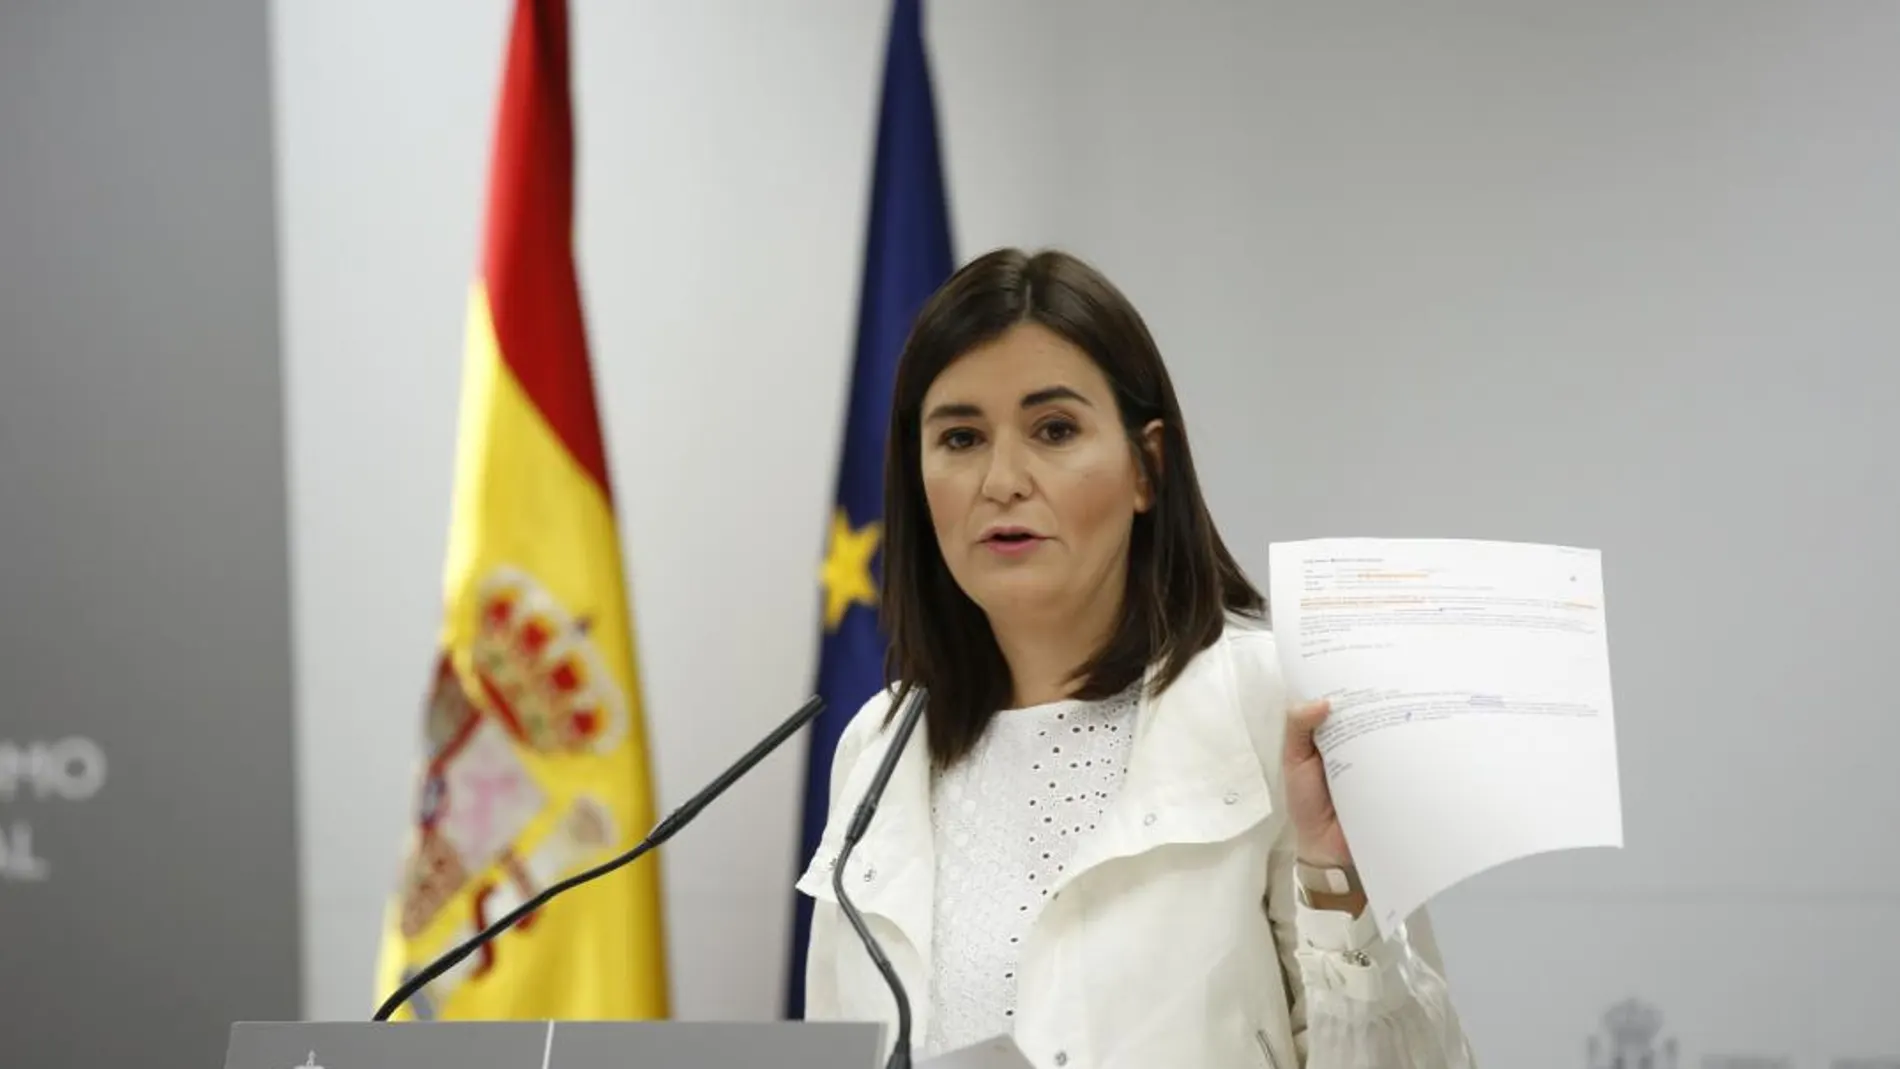 La ministra de Sanidad, Consumo y Bienestar Social, Carmen Montón, ha negado hoy irregularidades en la obtención de su máster/J. Fdez.-Largo